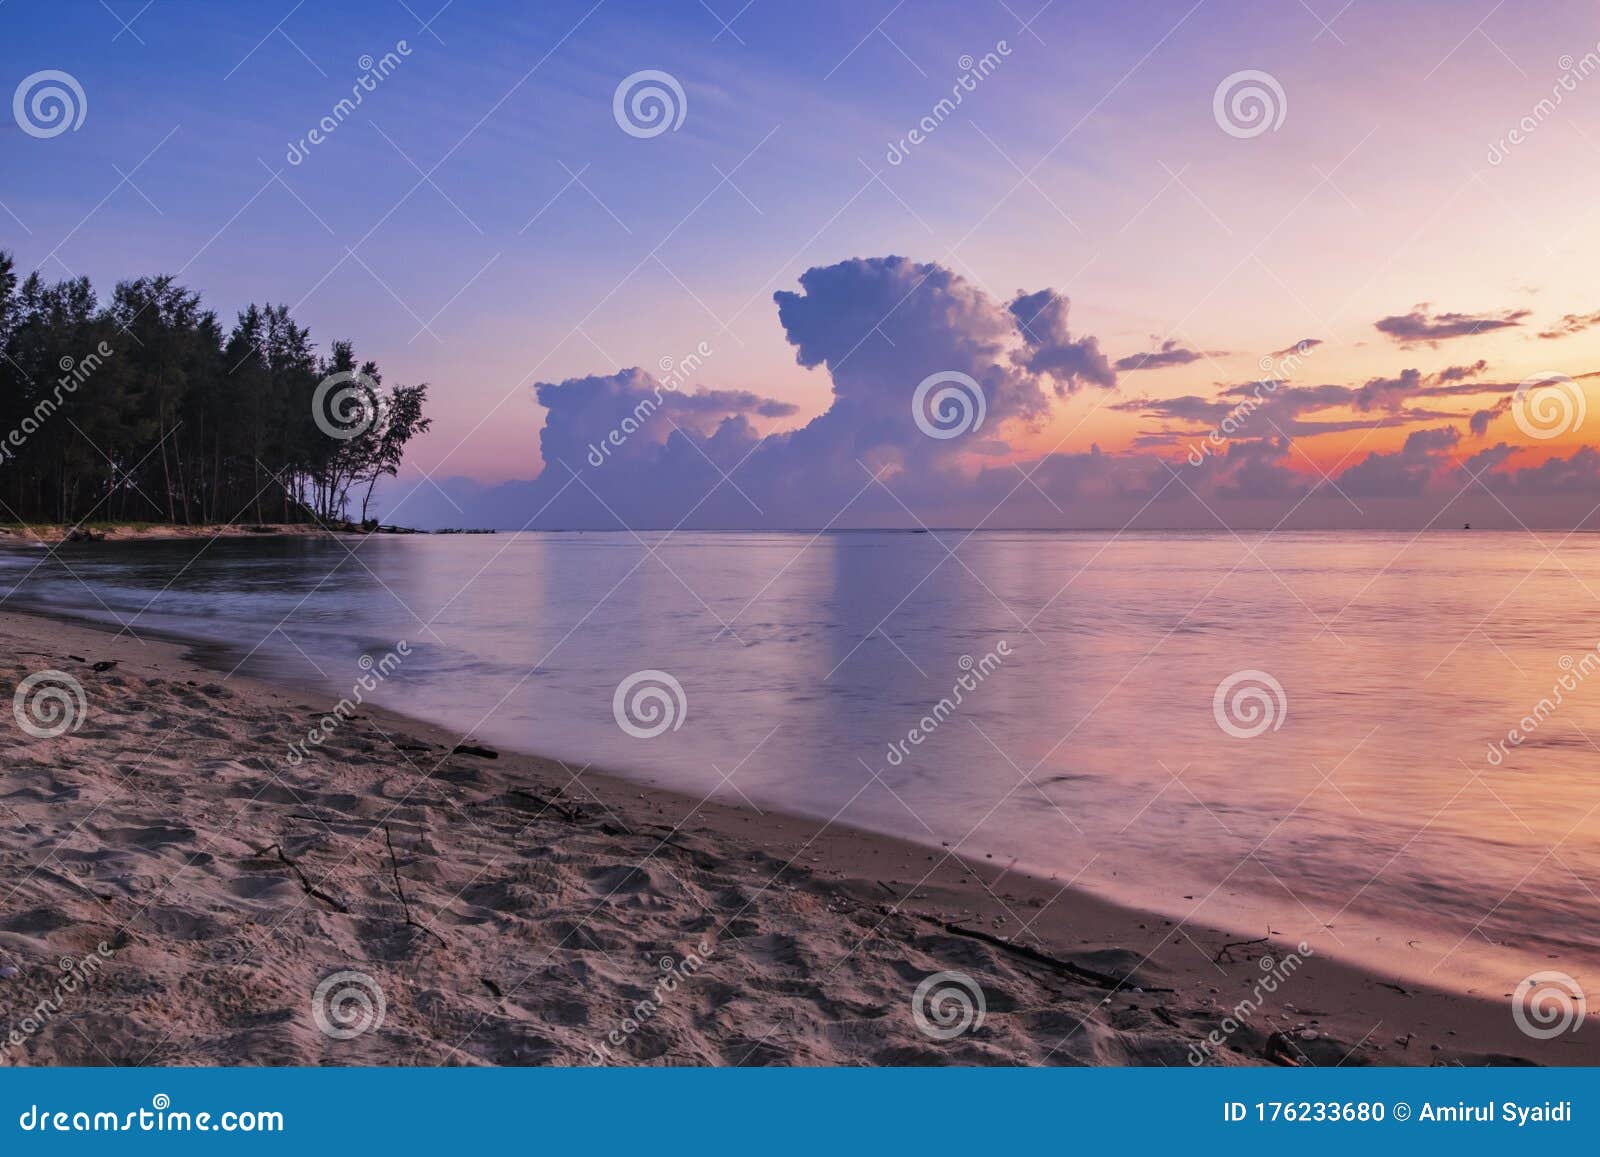 sunrise surrounding kuala ibai beach located in terengganu, malaysia